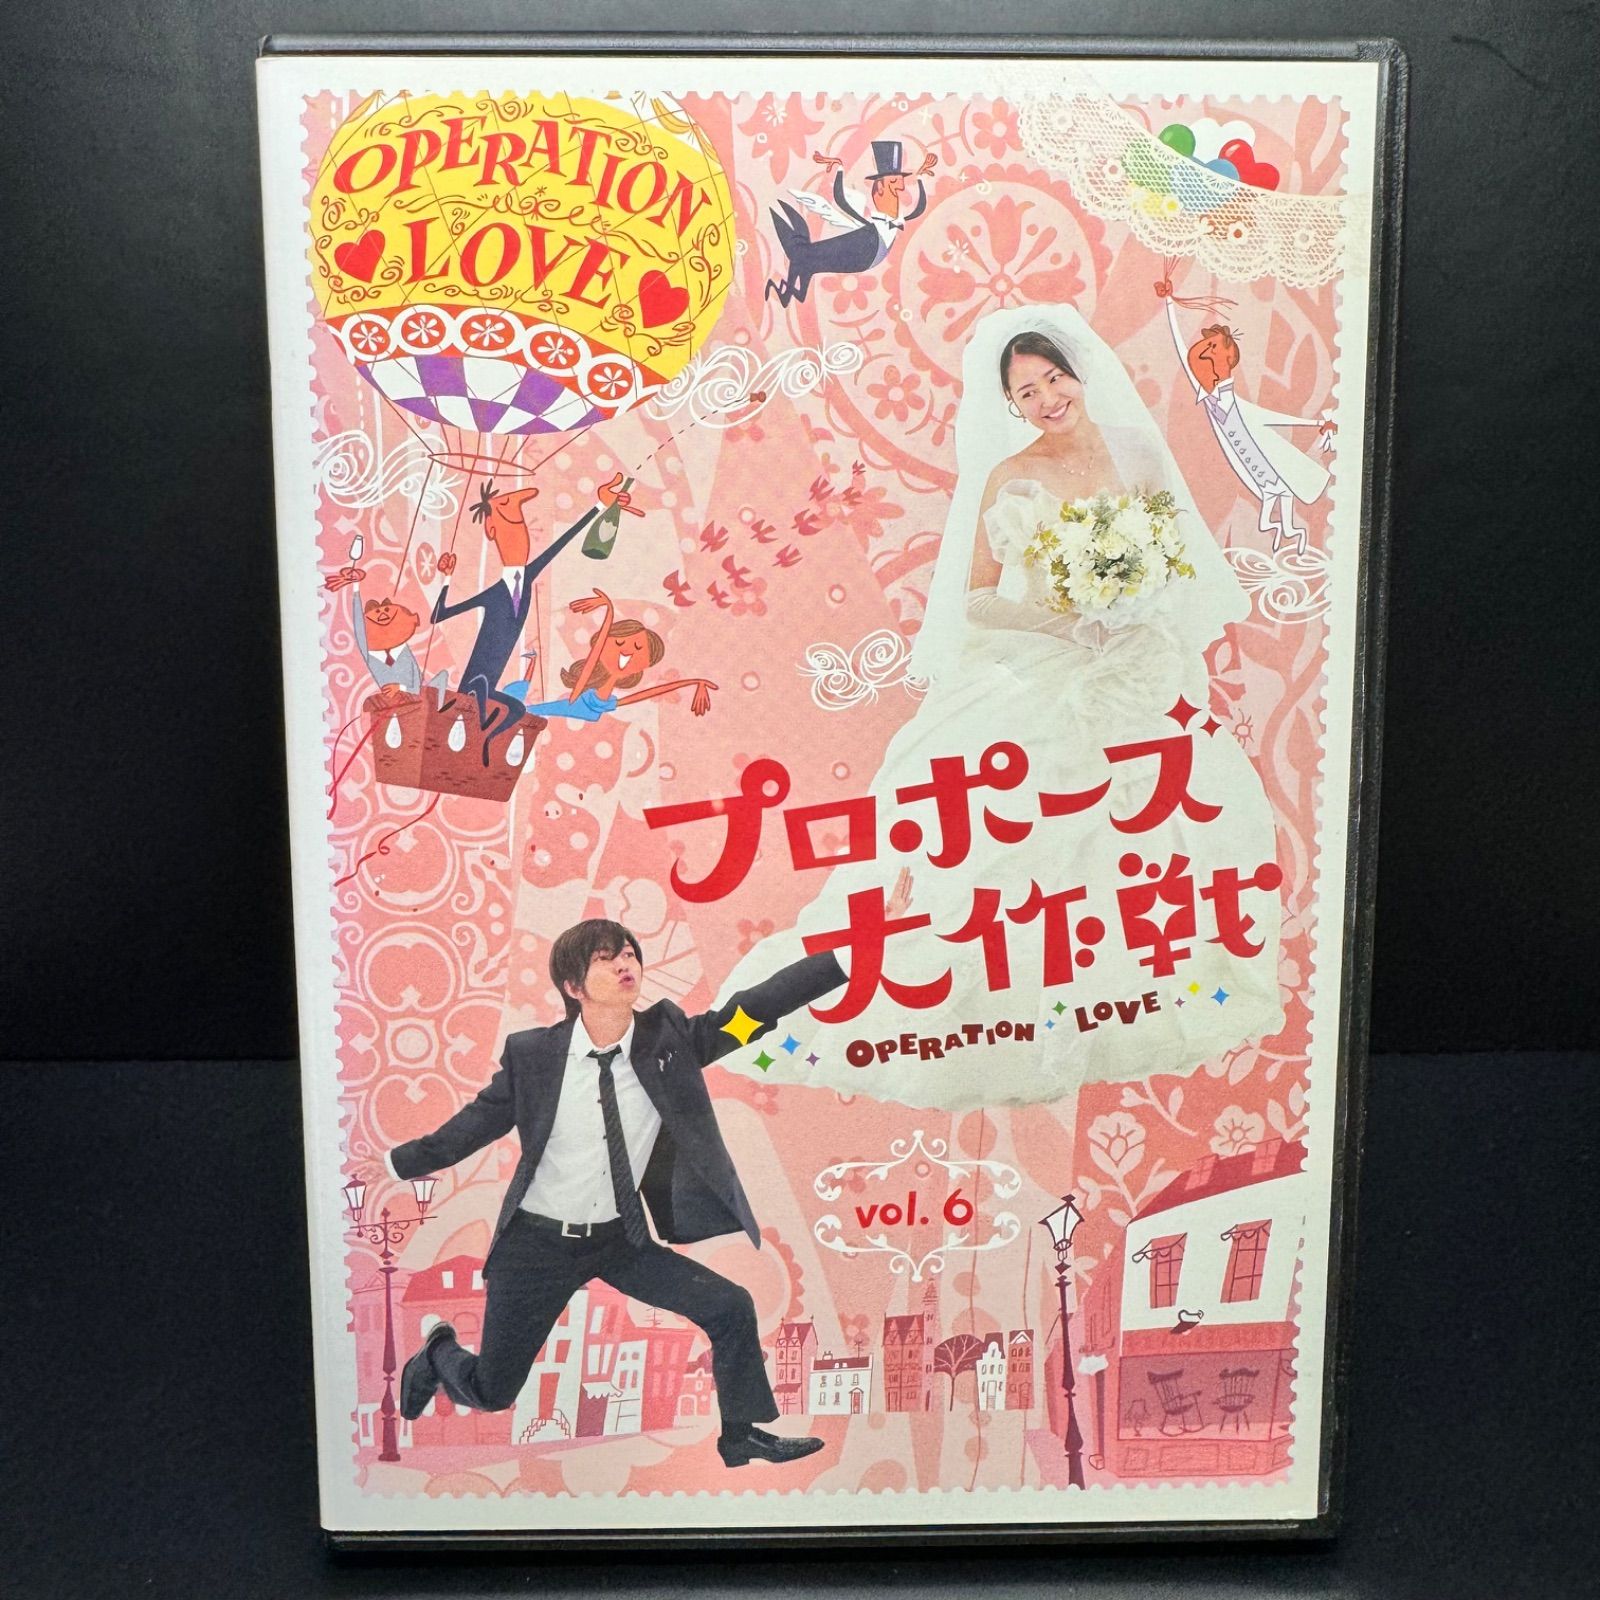 プロポーズ大作戦 vol.6 DVD 新品ケース収納 出演 山下智久 長澤まさみ 